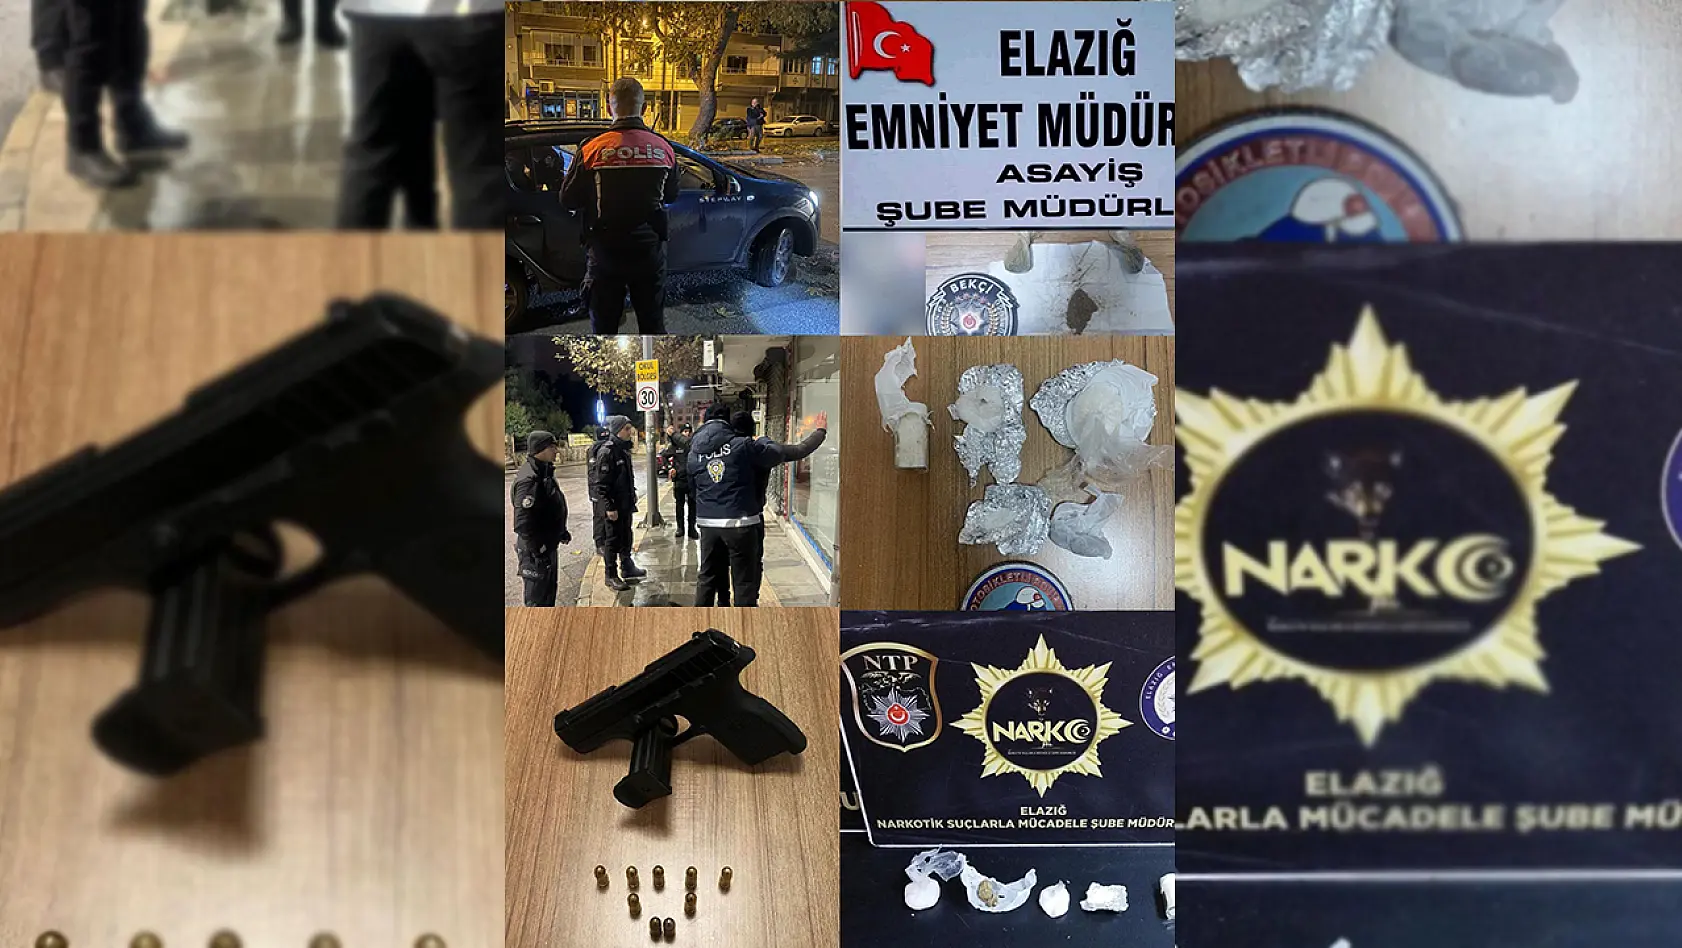 Elazığ'da Huzur Ve Güven Uygulaması: 2 Bin 413 Kişi Denetlendi, Aranan 9 Kişi Yakalandı